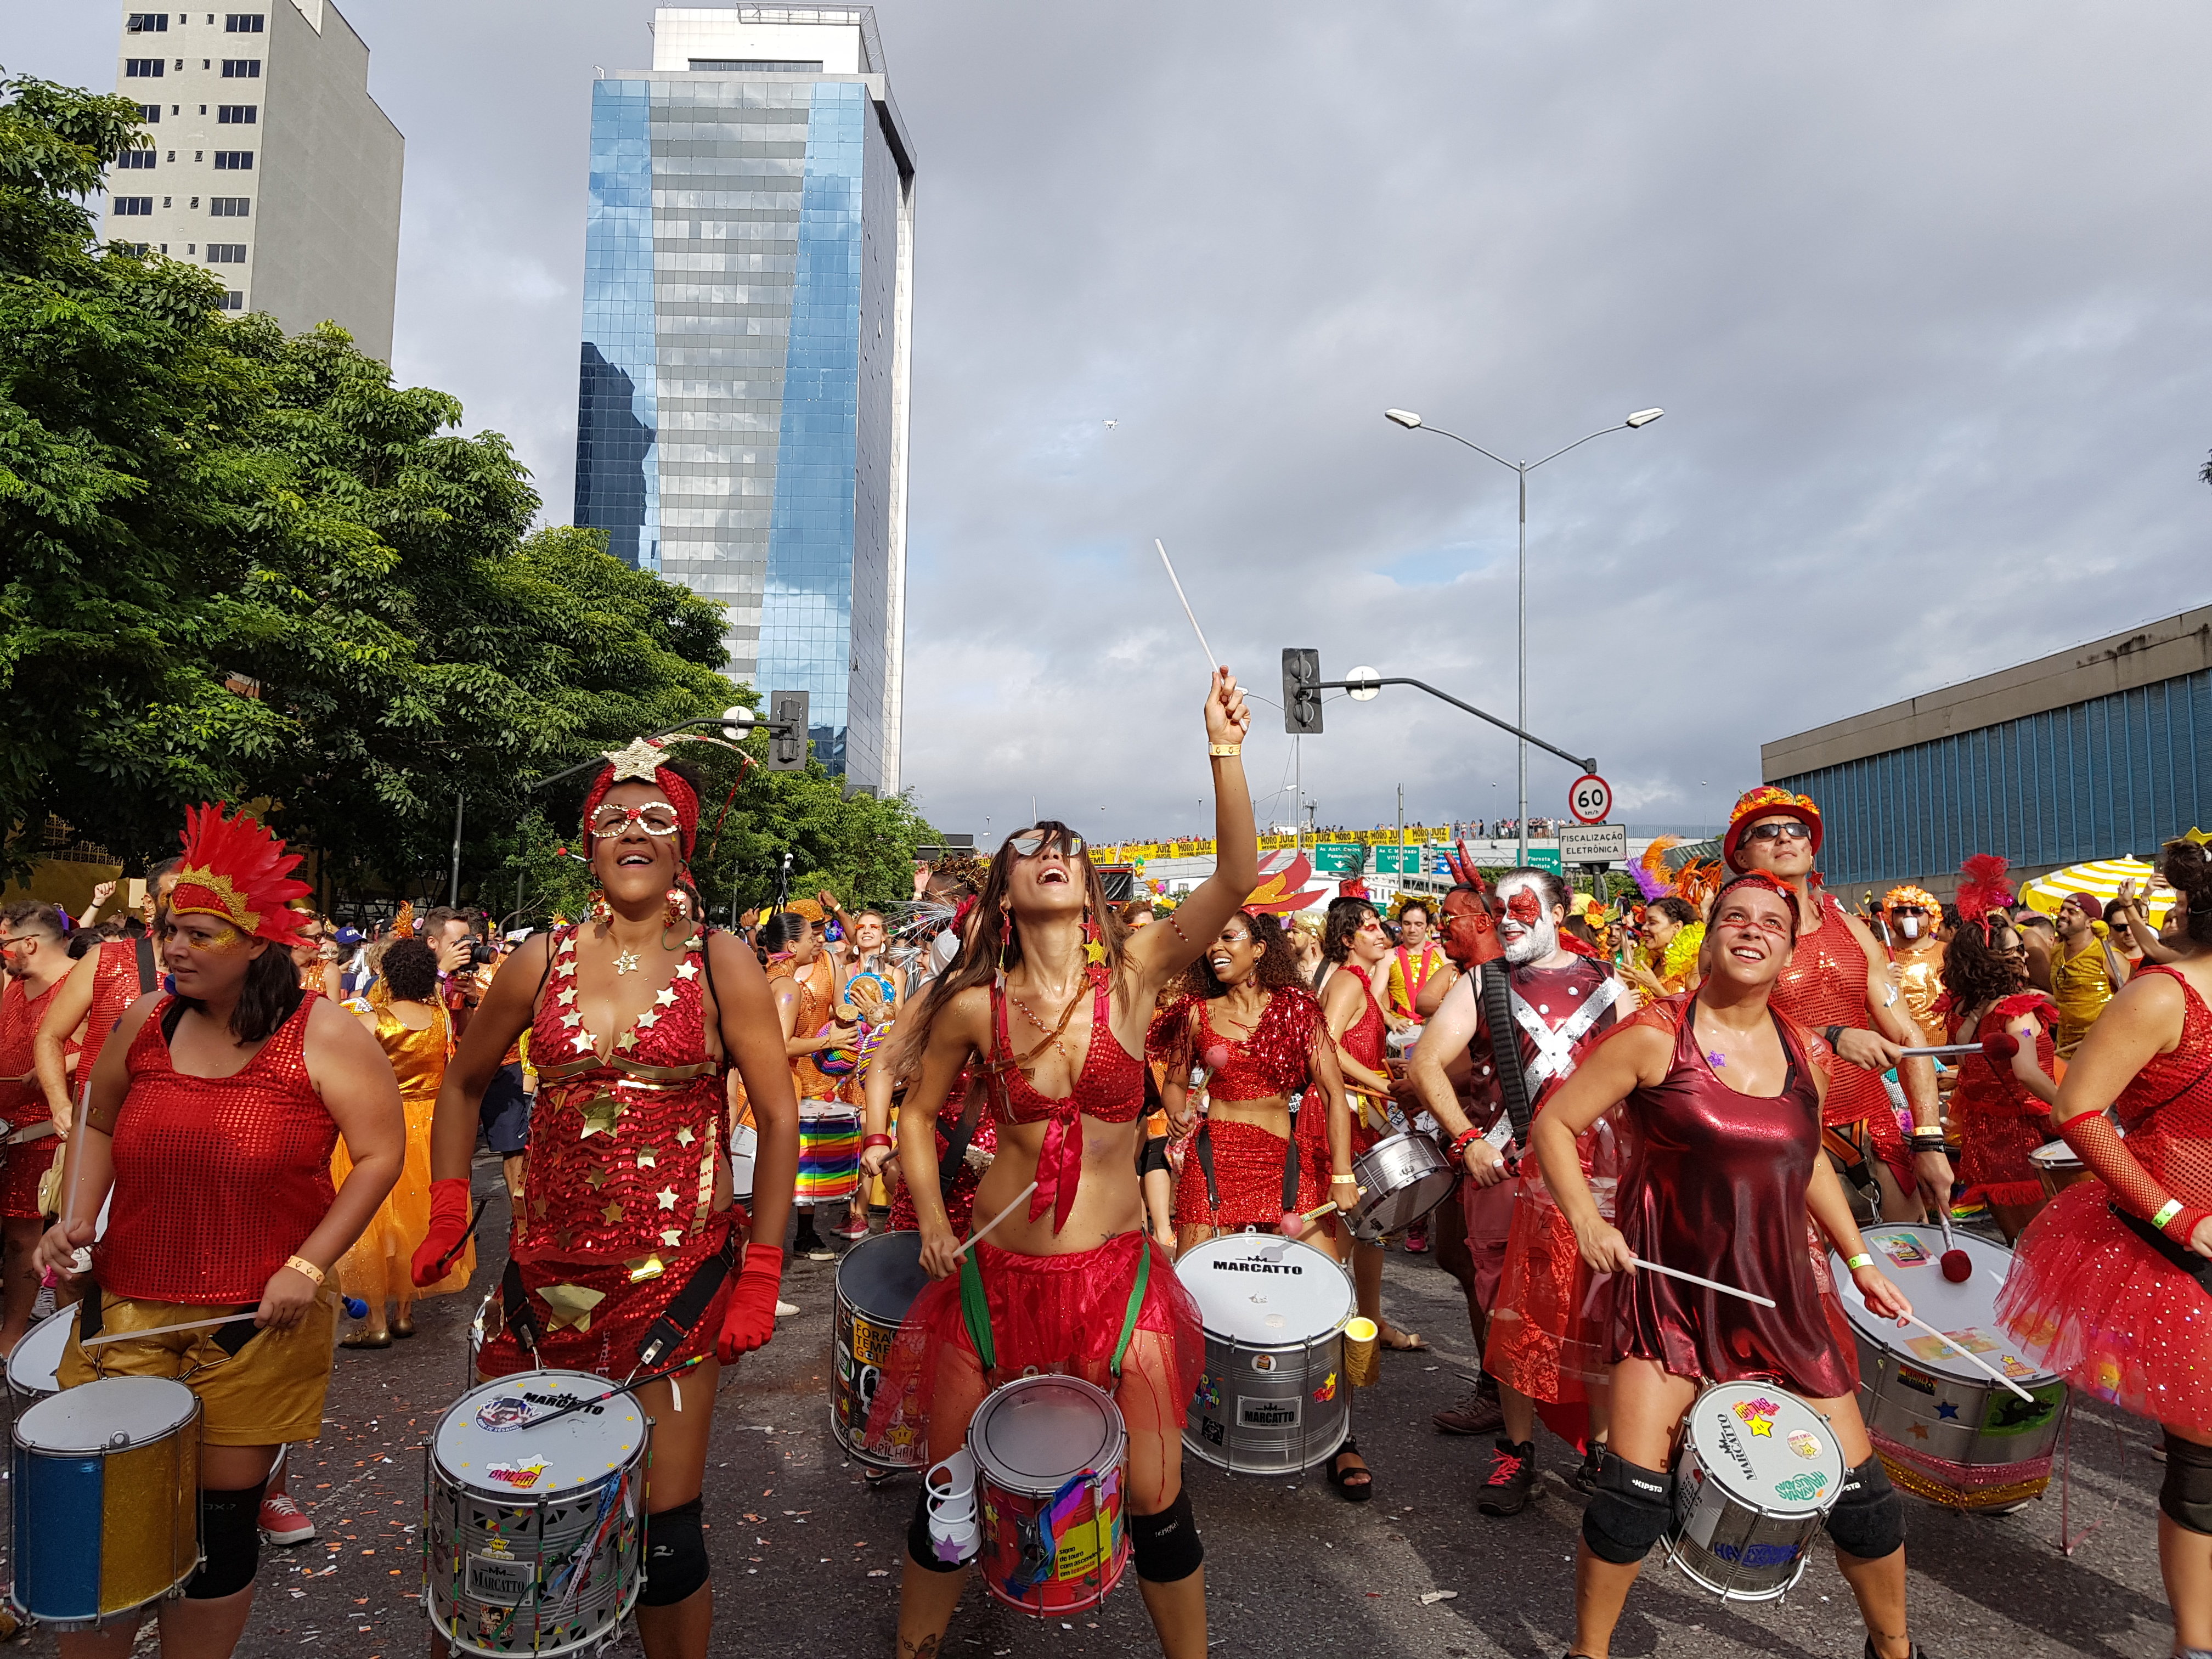 Carnaval roqueiro vem com tudo em Curitiba